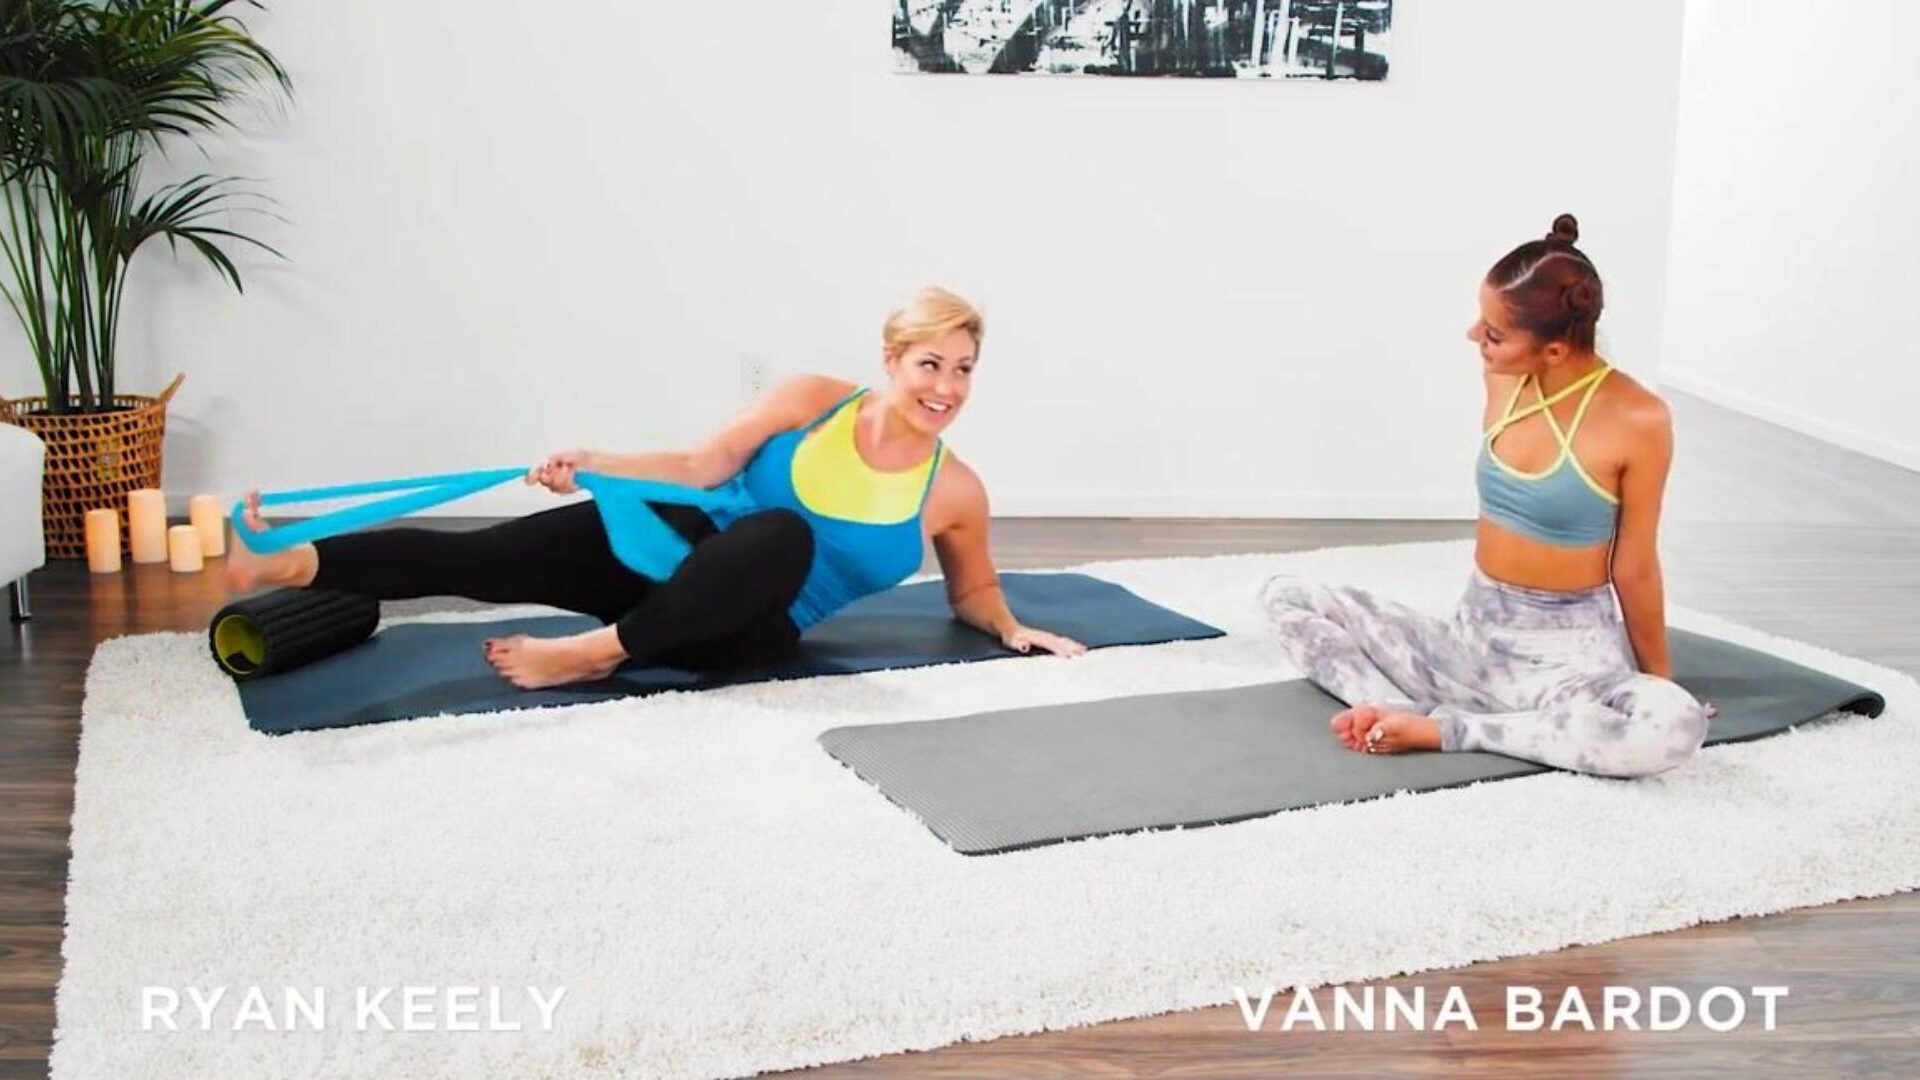 vanna bardot hat ein fingering Yoga Training mit Ryan Keely Vanna Bardot und Ryan Keely